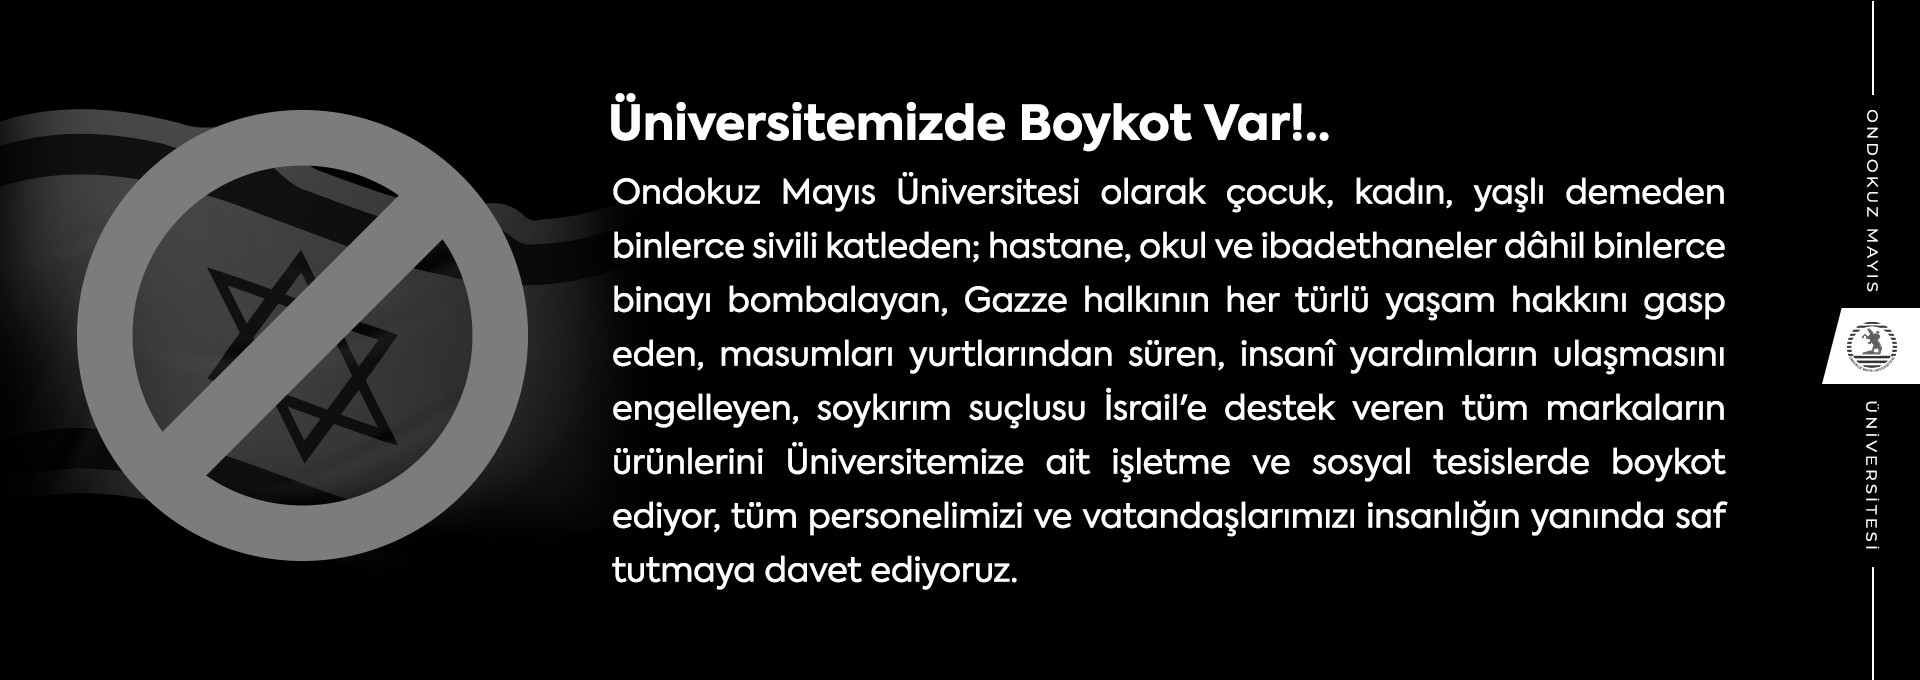 Üniversitemizde Boykot Var!..